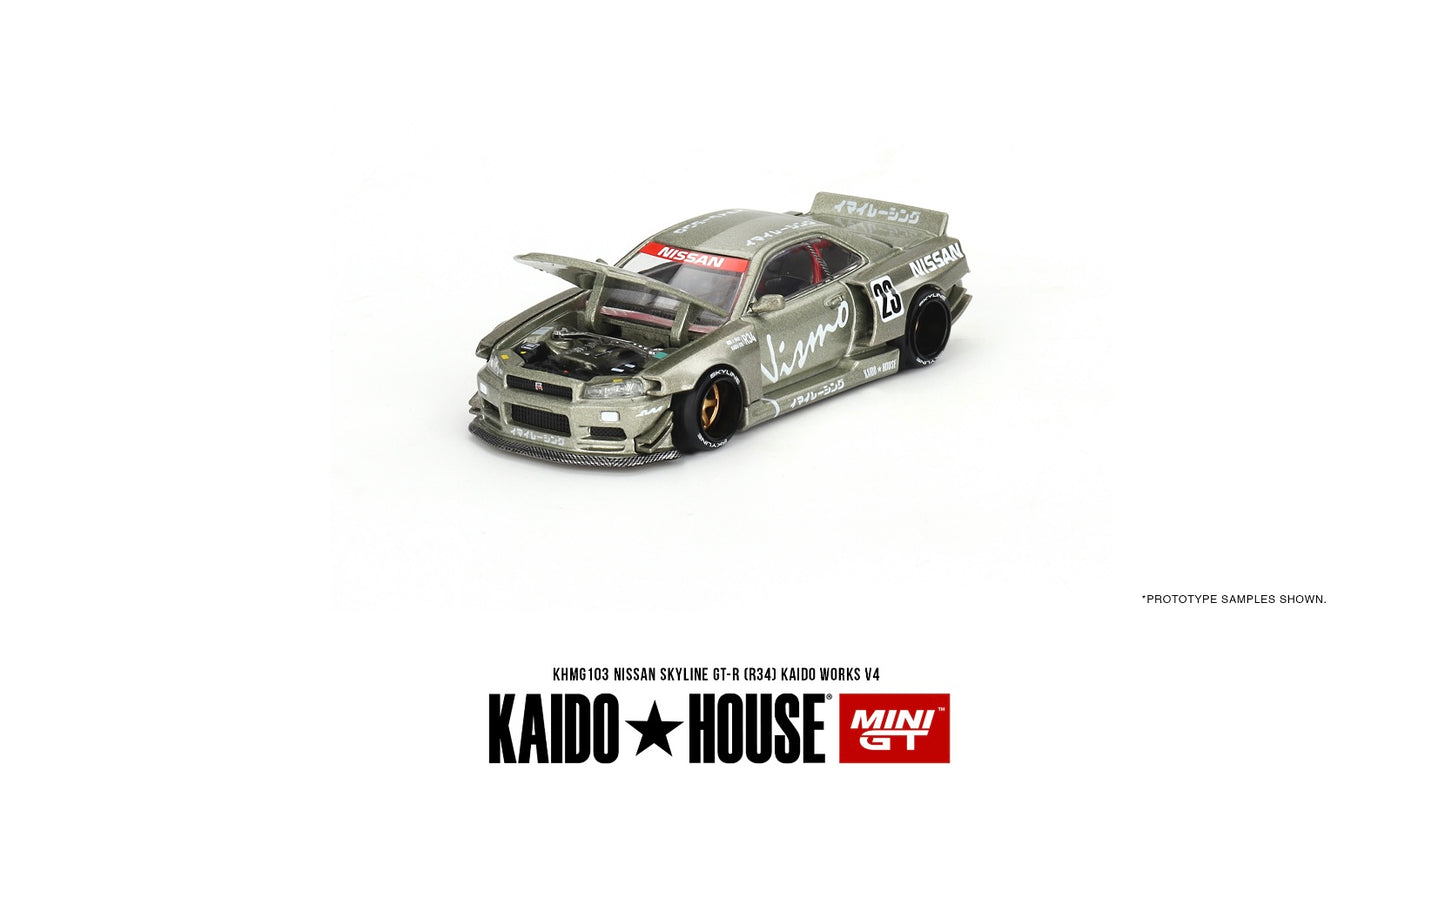 1:64 Nissan Skyline GT-R (R34) Kaido House Mini GT